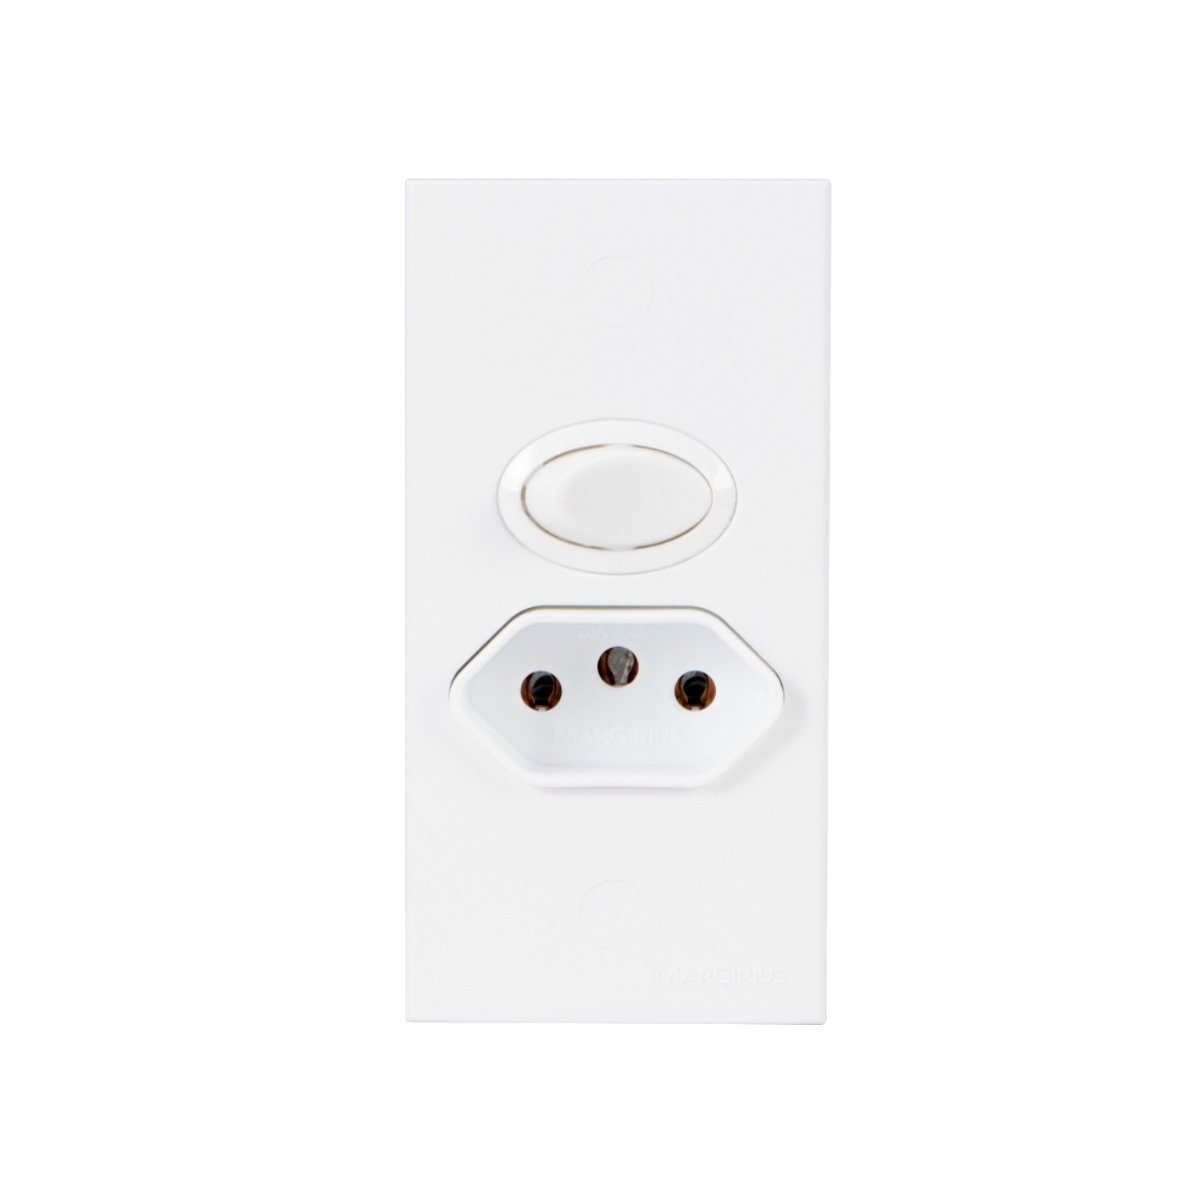 Interruptor com Tomada para Móveis Br Cm2-32 Margirius Cor:branco